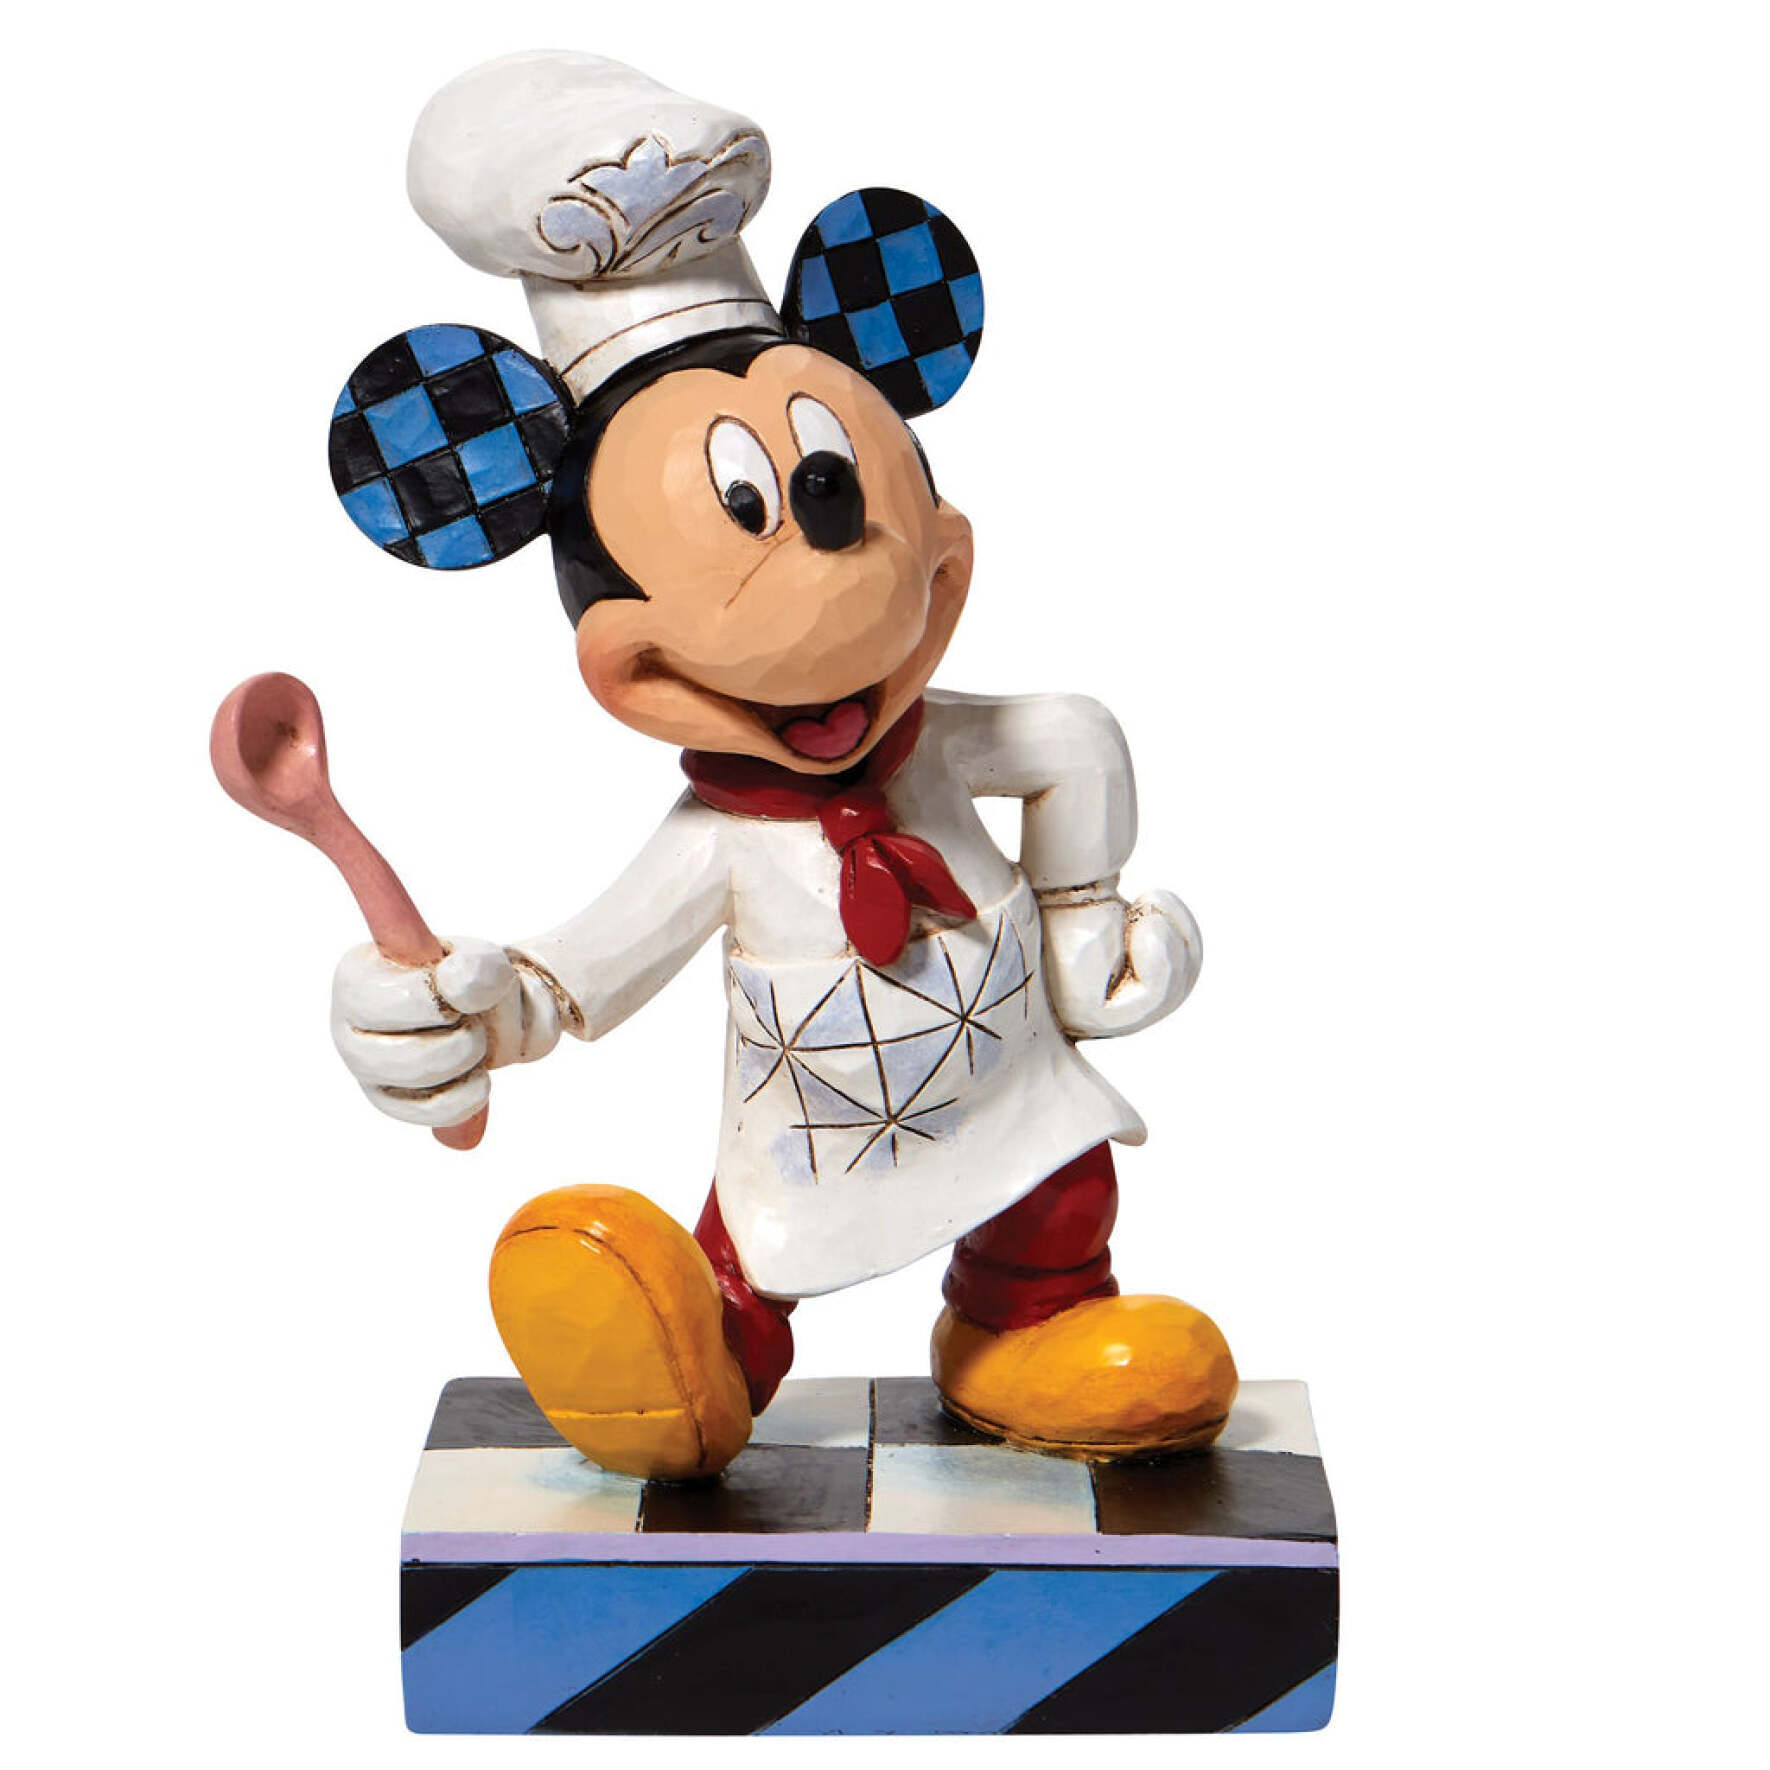  فیگور میکی سرآشپز Chef Mickey 